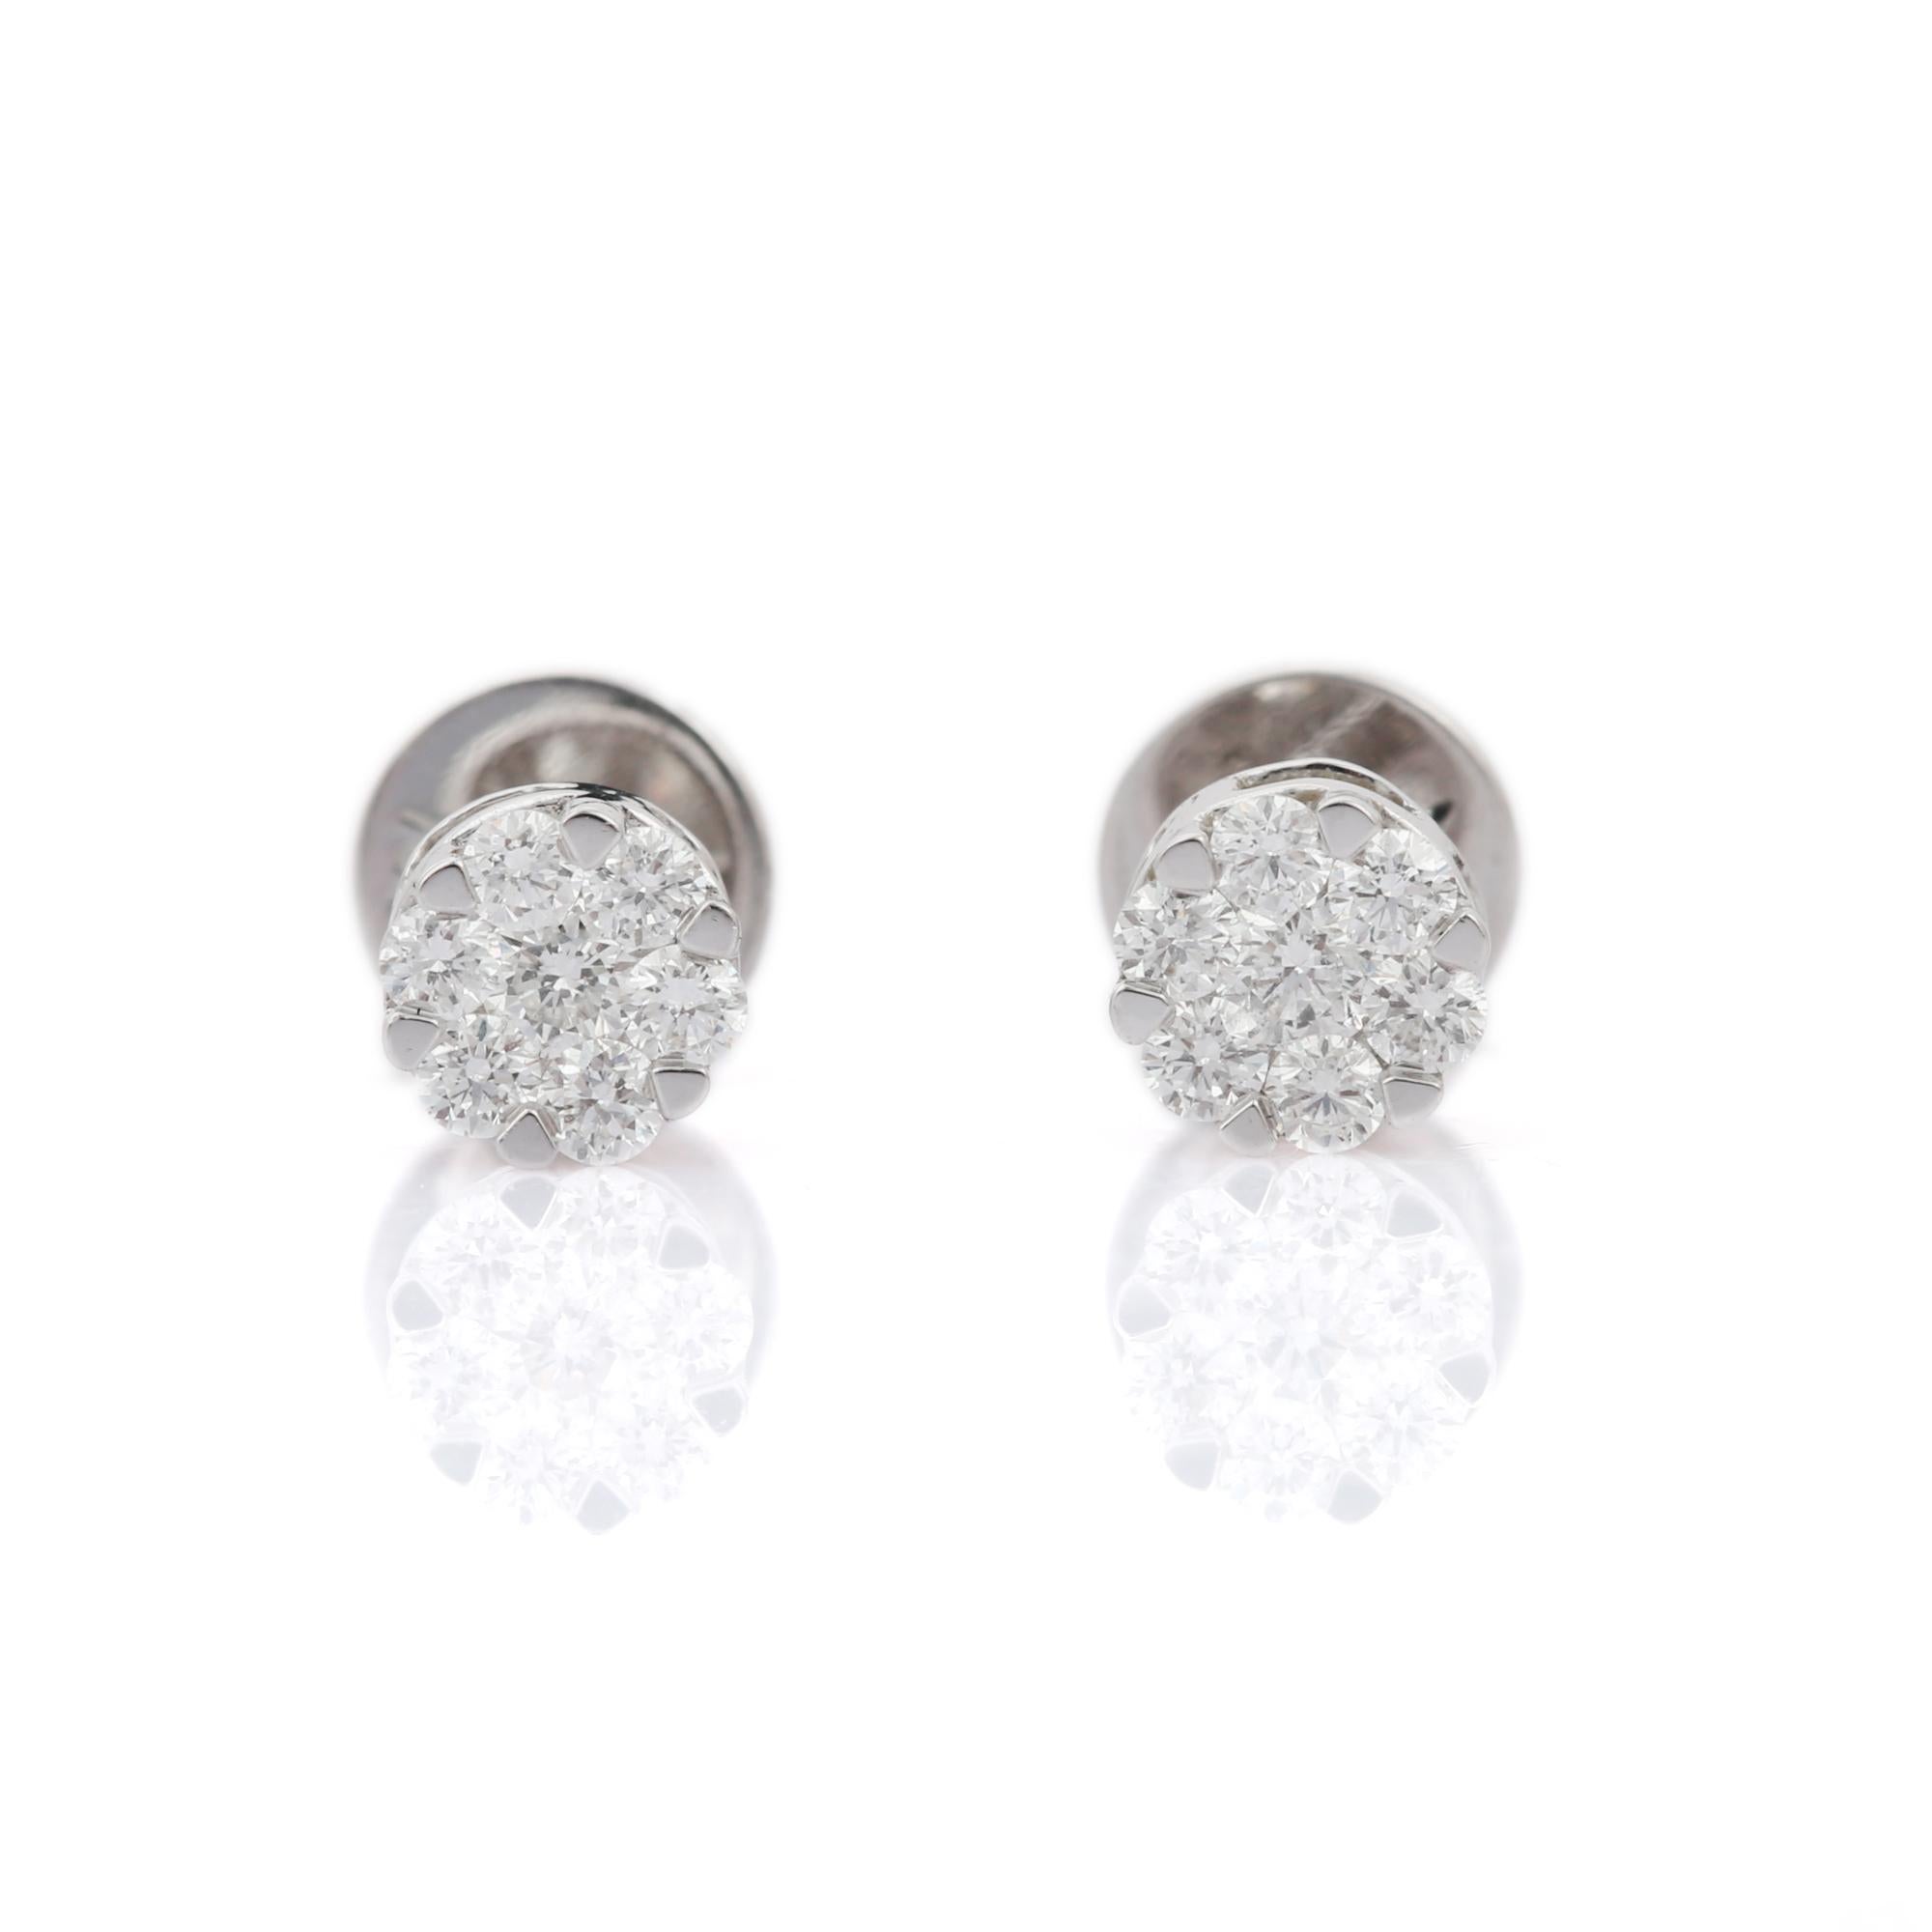 0.5 carat earrings